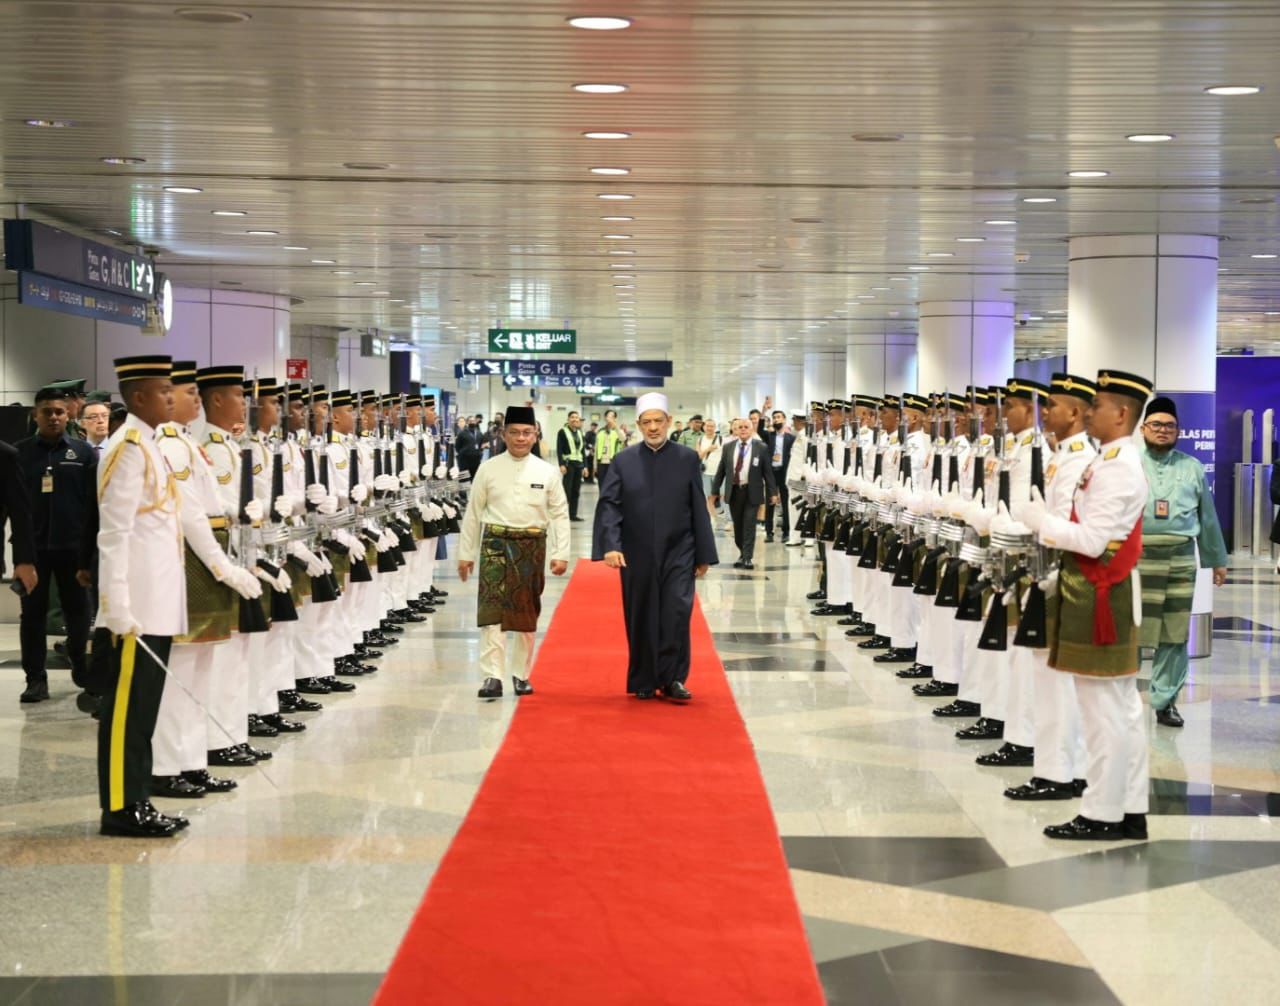 مراسم استقبال رسمية لشيخ الأزهر فور وصوله مطار كوالالمبور